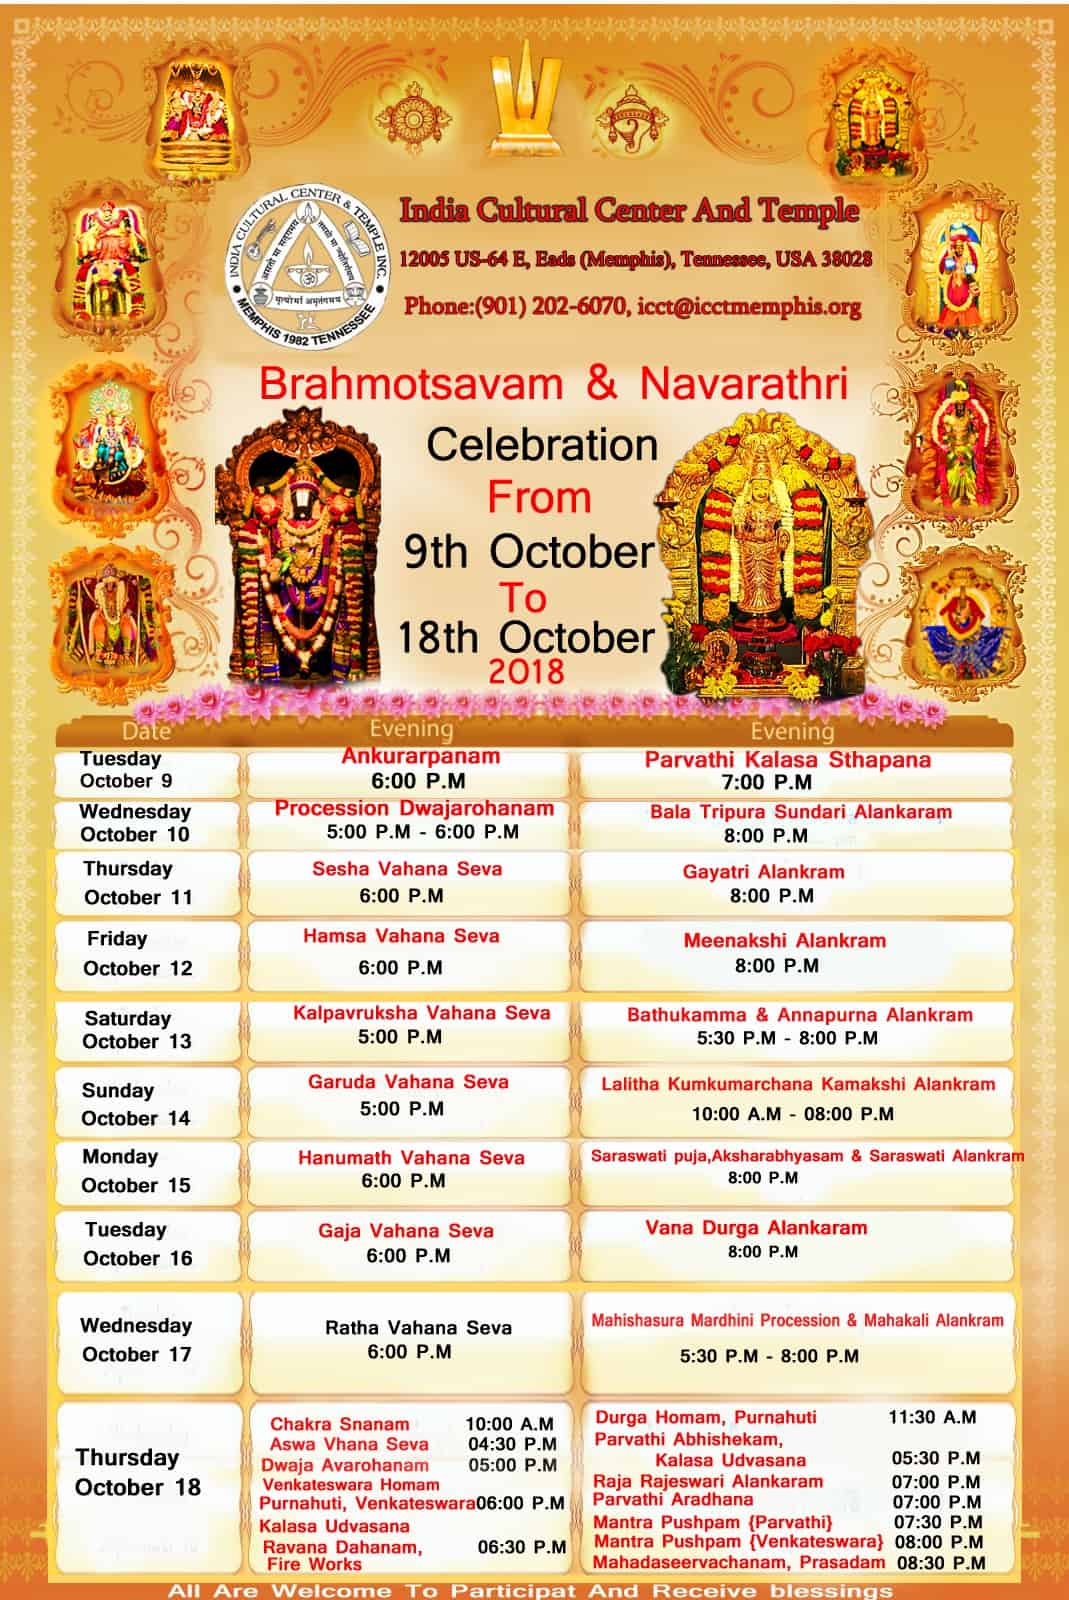 Brahmotsavam & Navaratri at ICCT